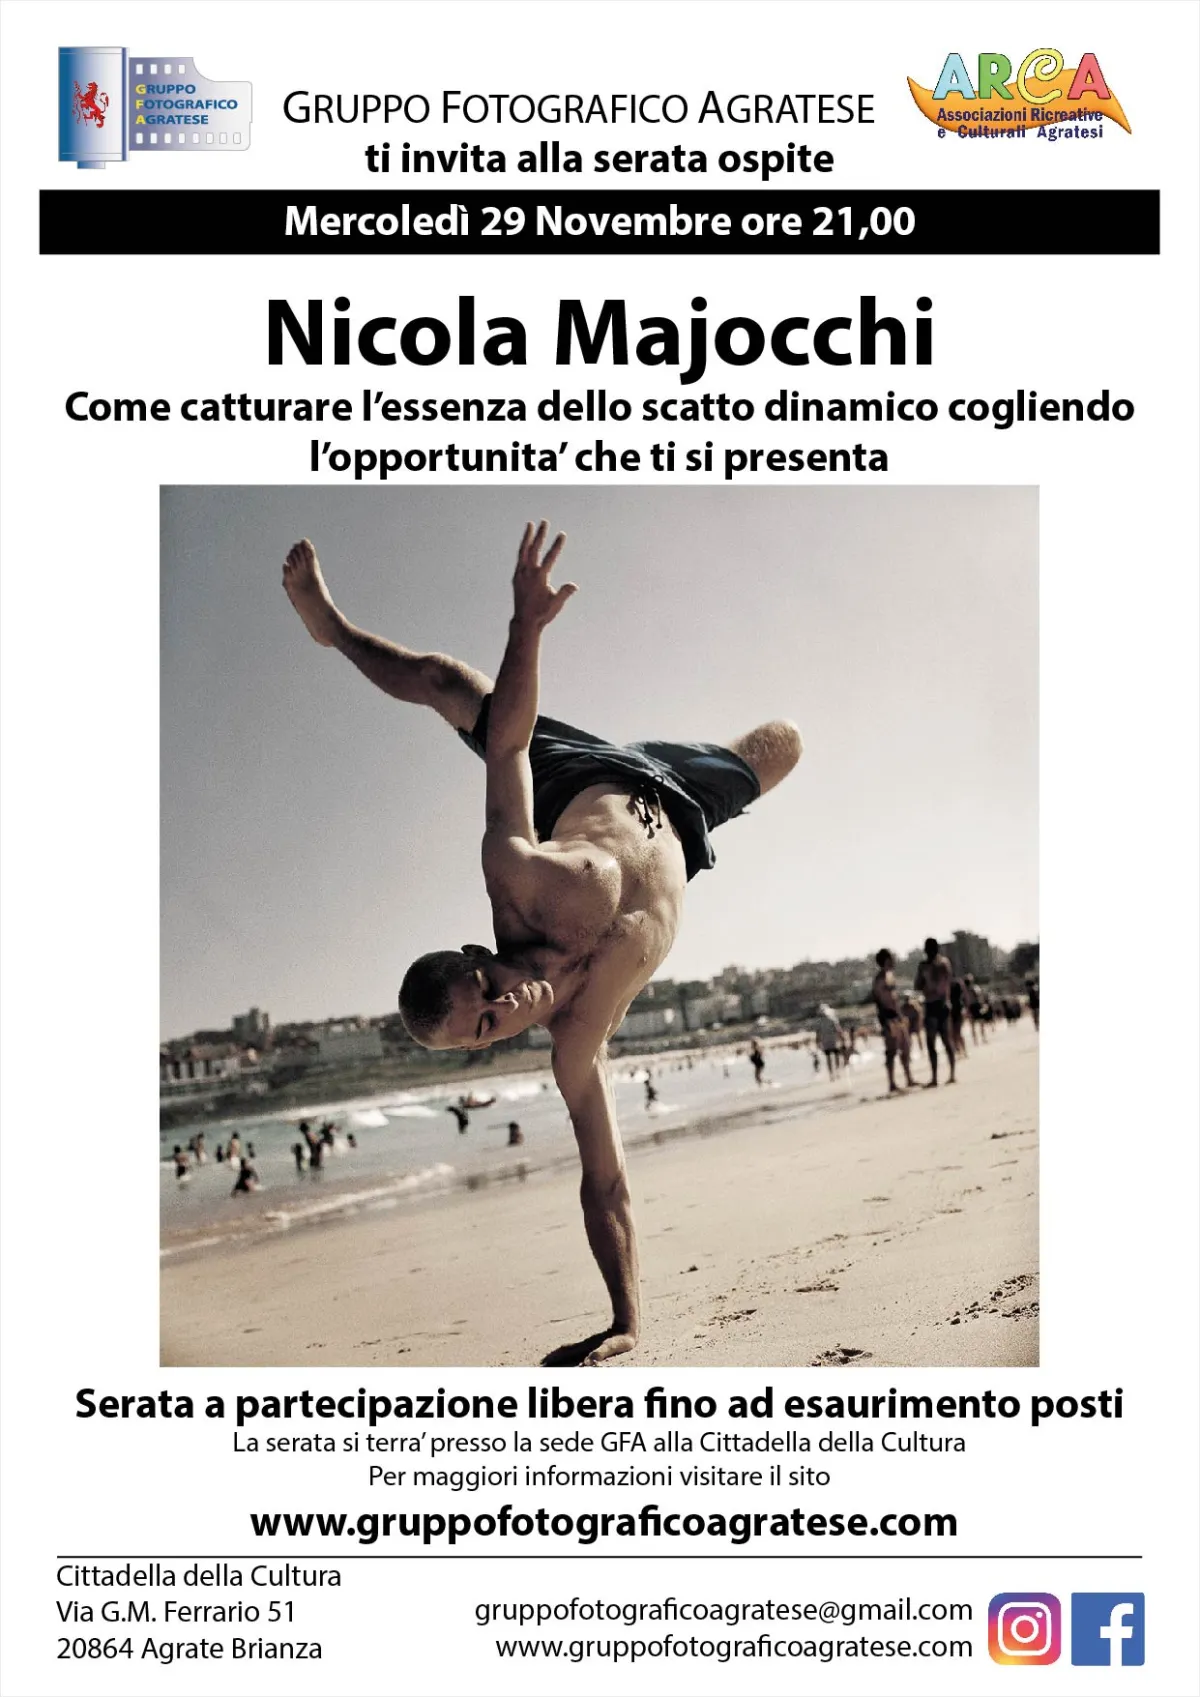 Nicola Majocchi sara’ il nostro ospite Mercoledì 29 Novembre ore 21.00.